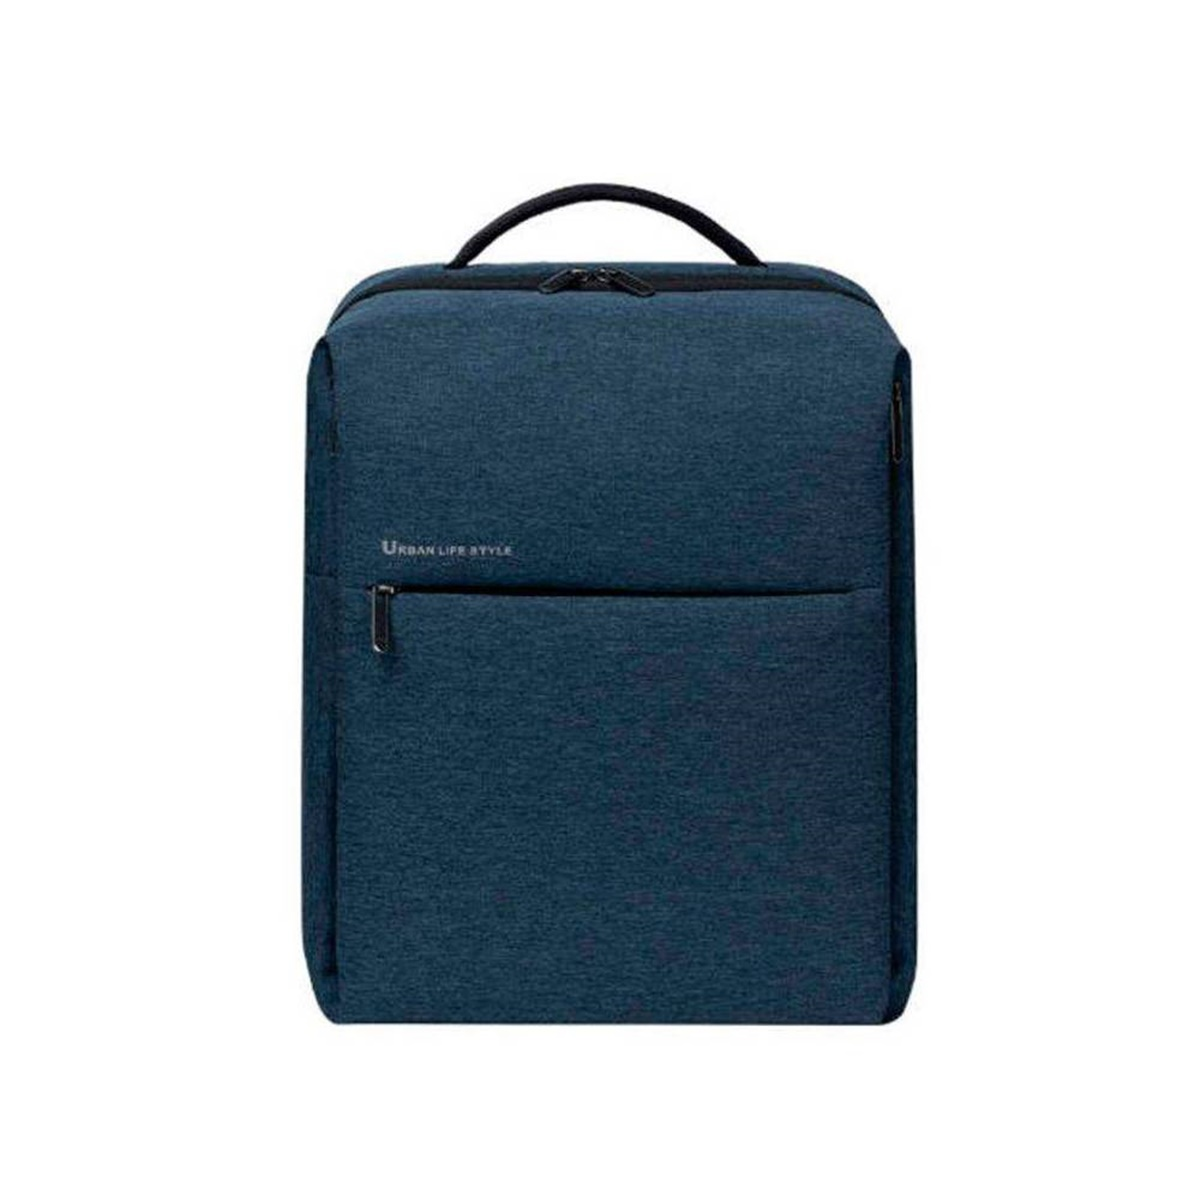 Xiaomi Mochila City 2 one size blue mi backpack para portátil 15.6 azul 17 hasta 17lxiaomi